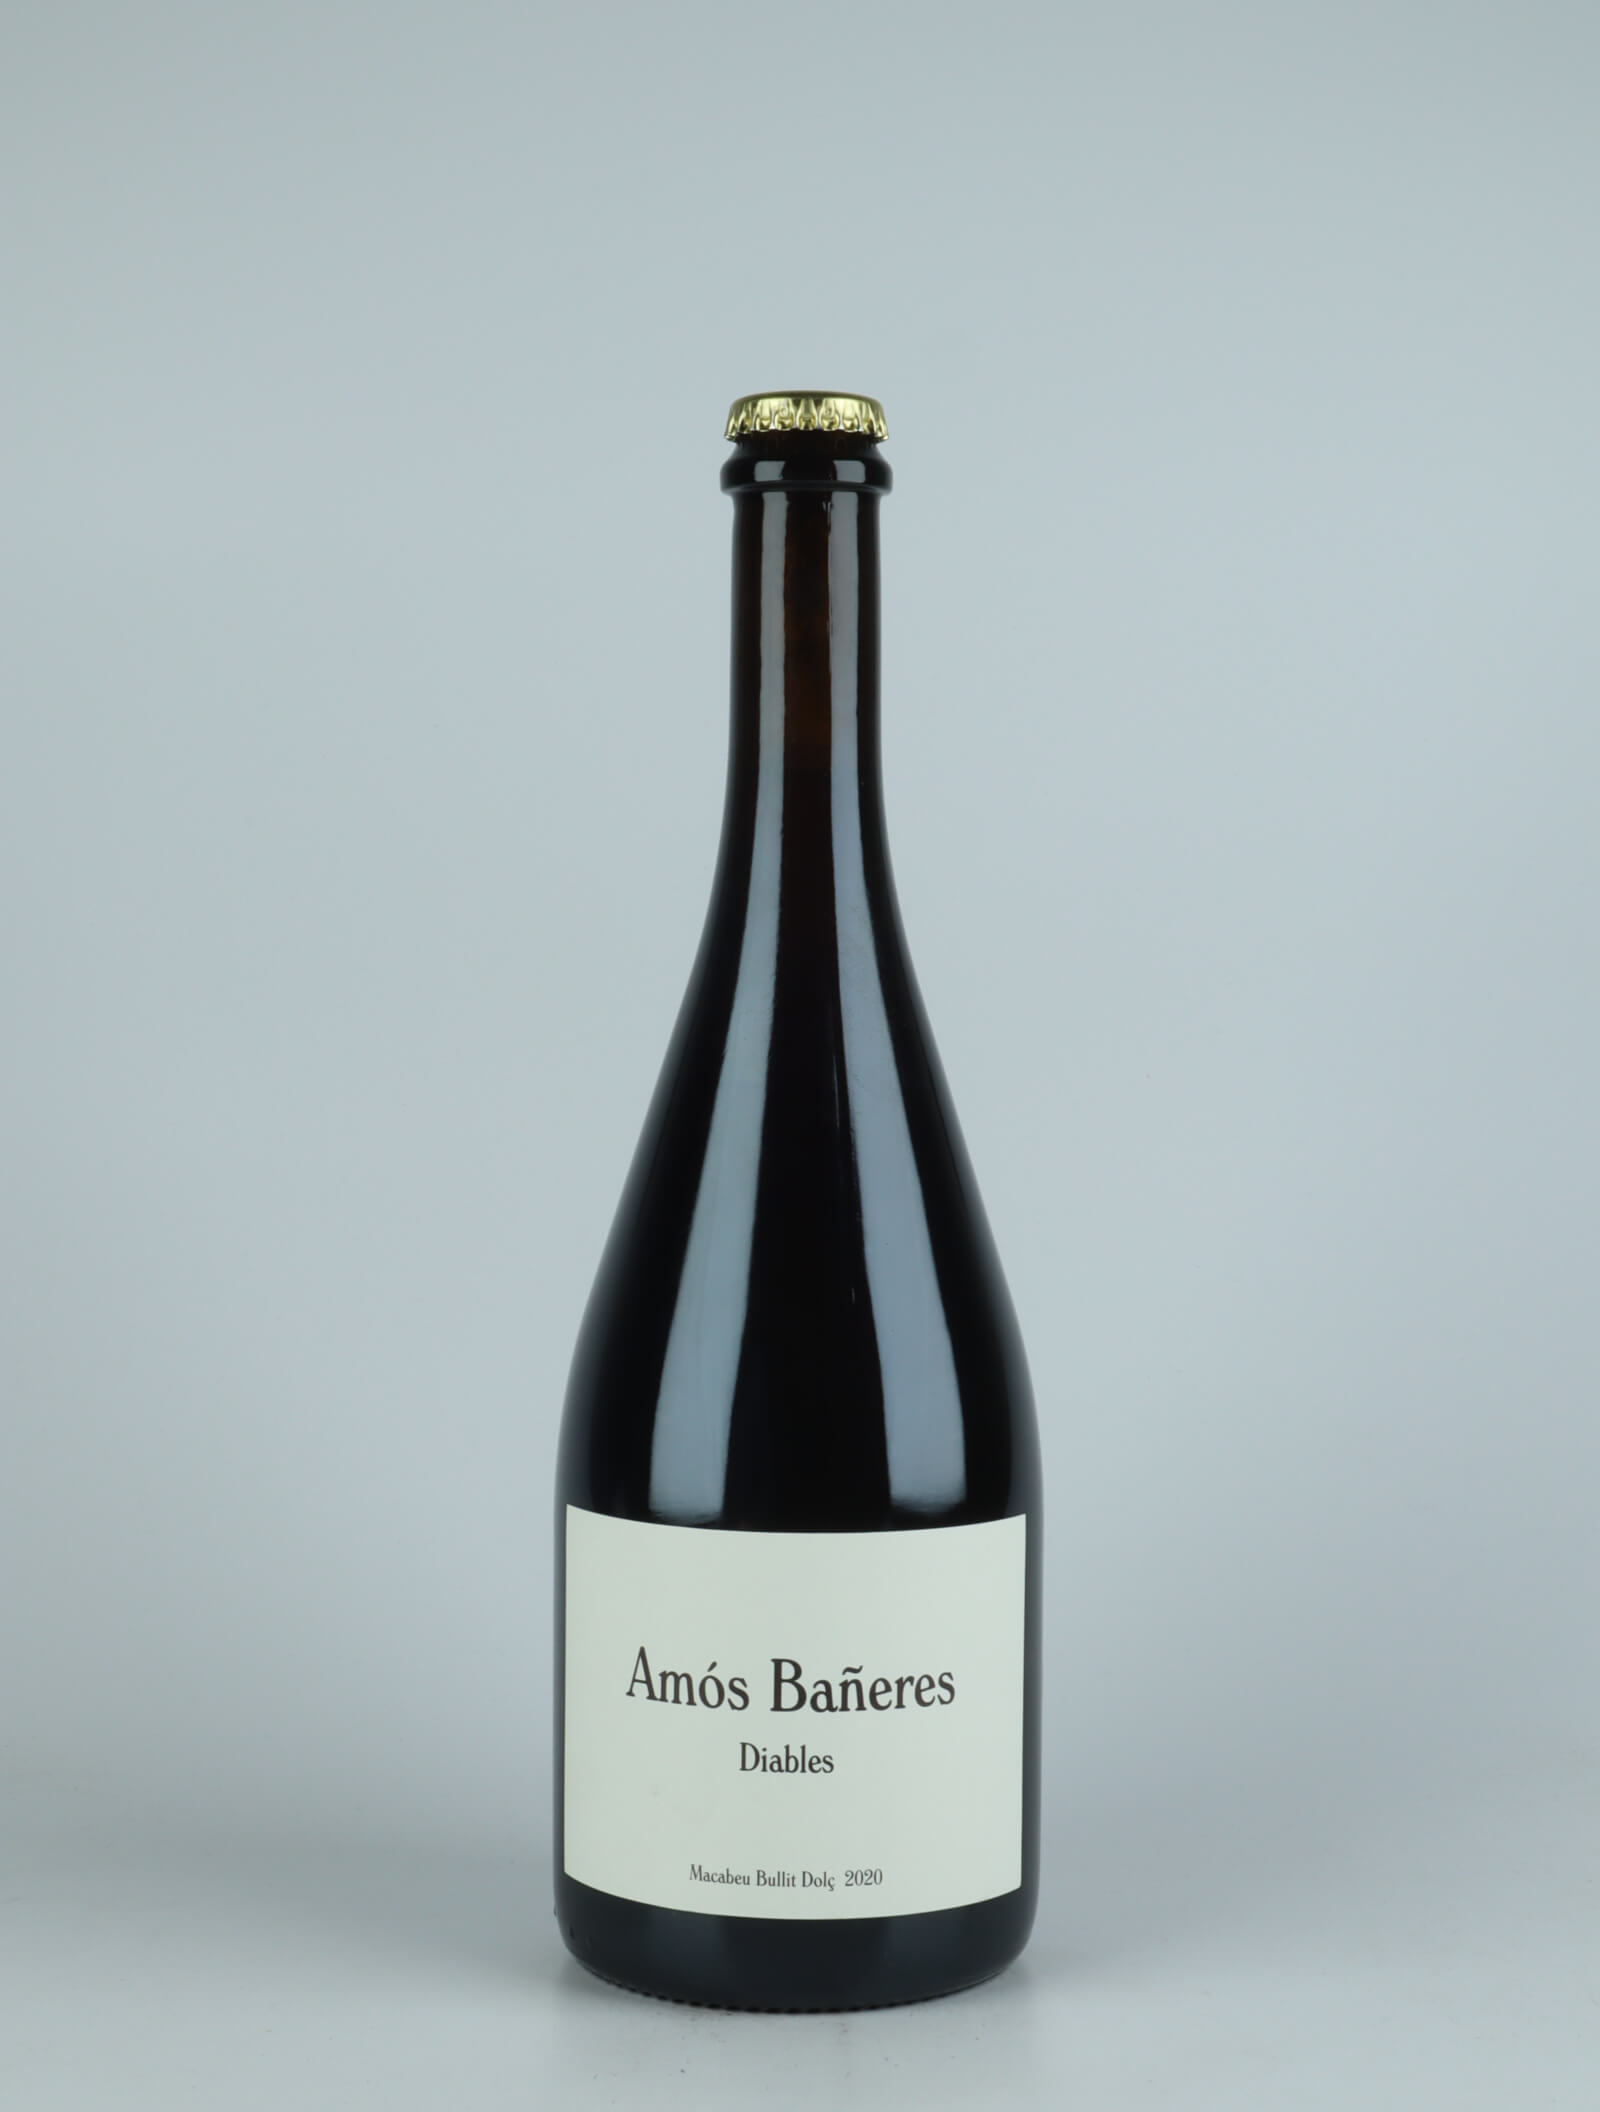 A bottle 2020 Diables Sweet wine from Amós Bañeres, Penedès in Spain